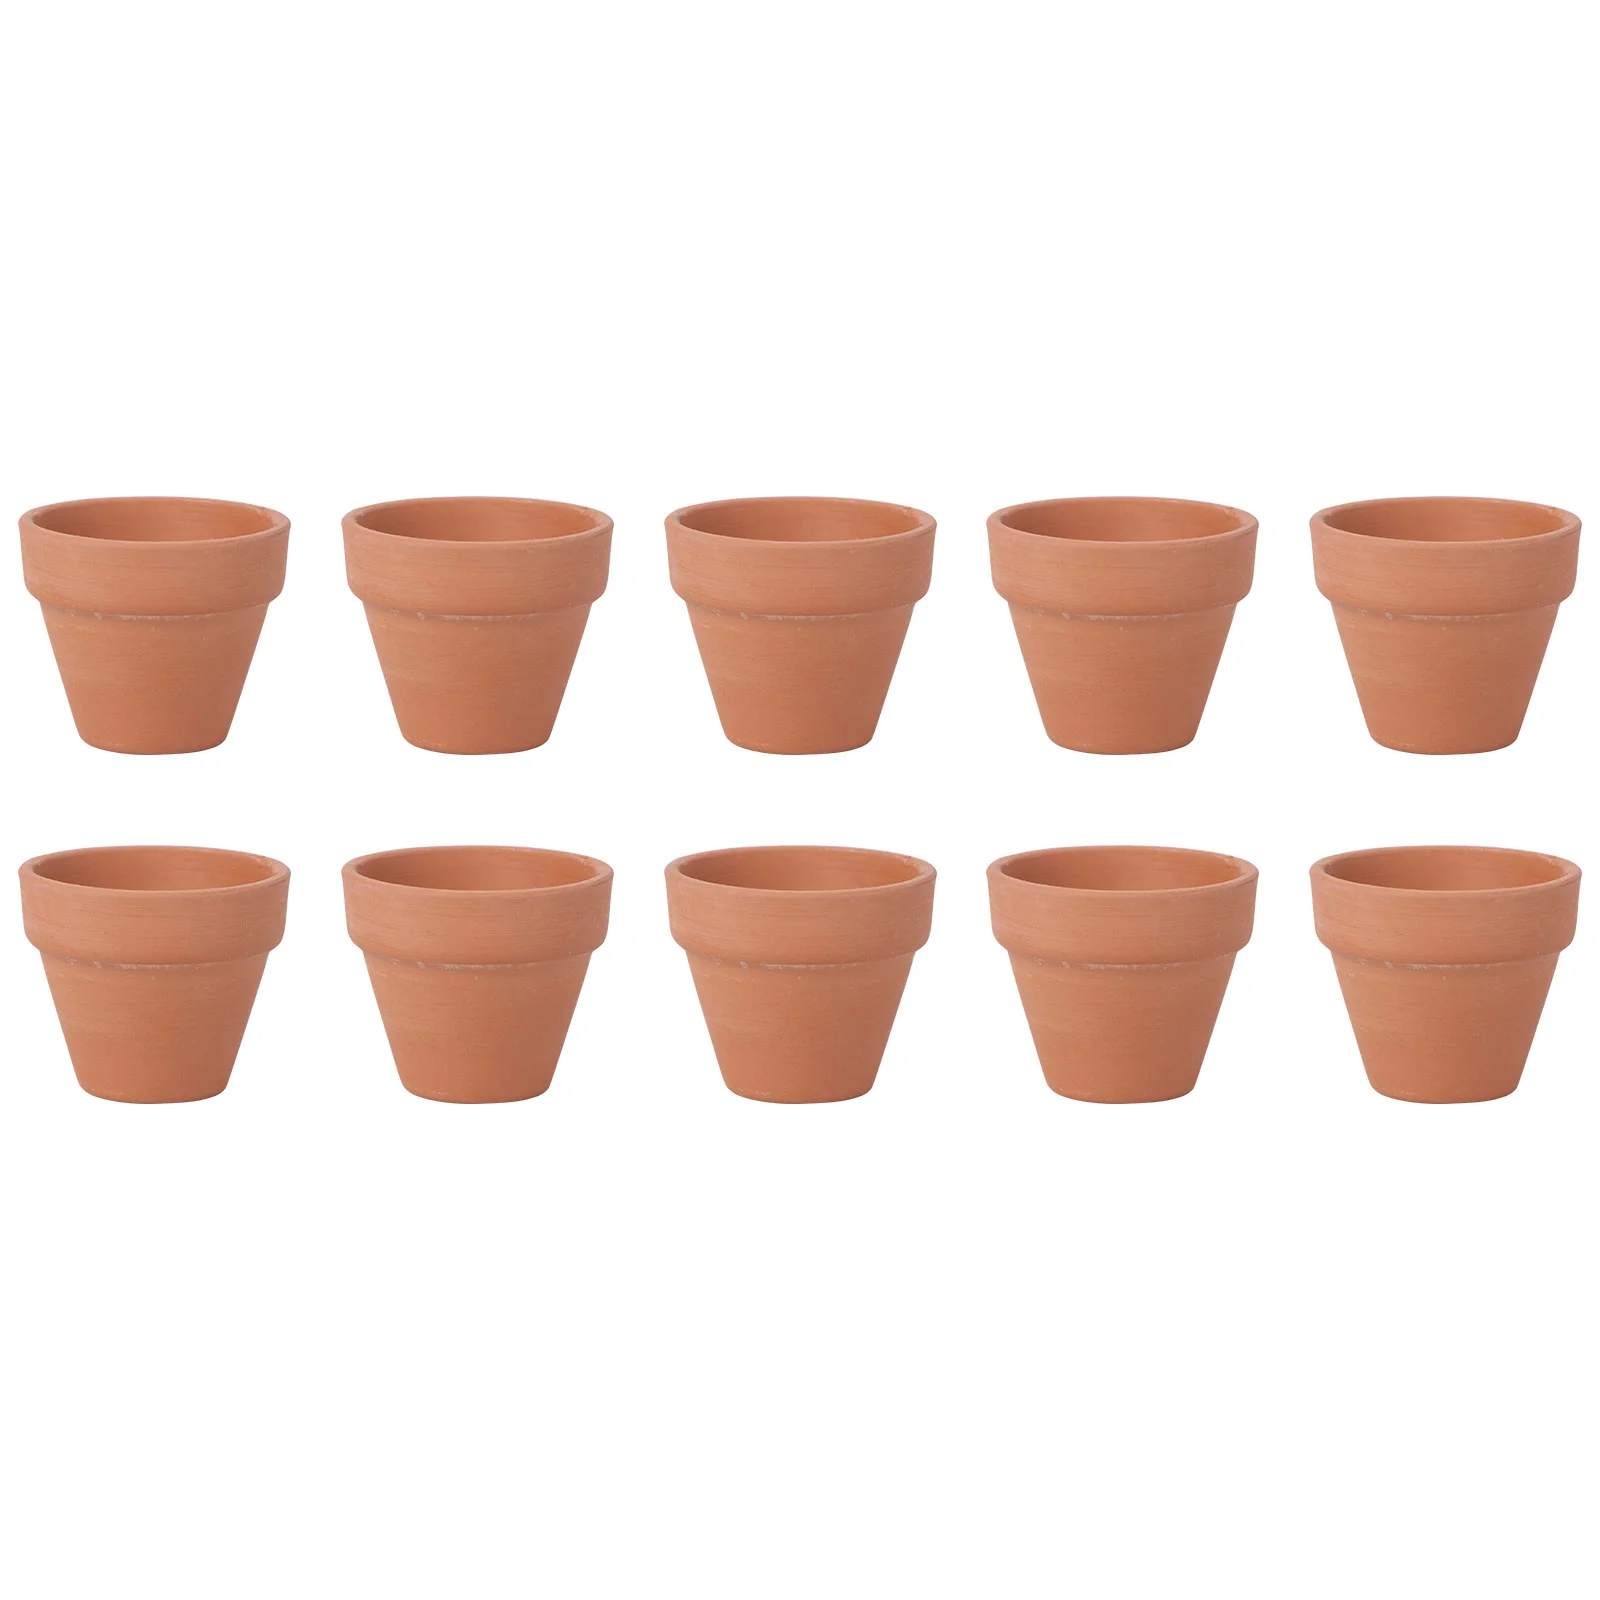 

10Pcs 4.5x4cm Small Mini Terracotta Pot Clay Ceramic Pottery Planter Cactus Flower Pots Succulent Nursery Pots Plants